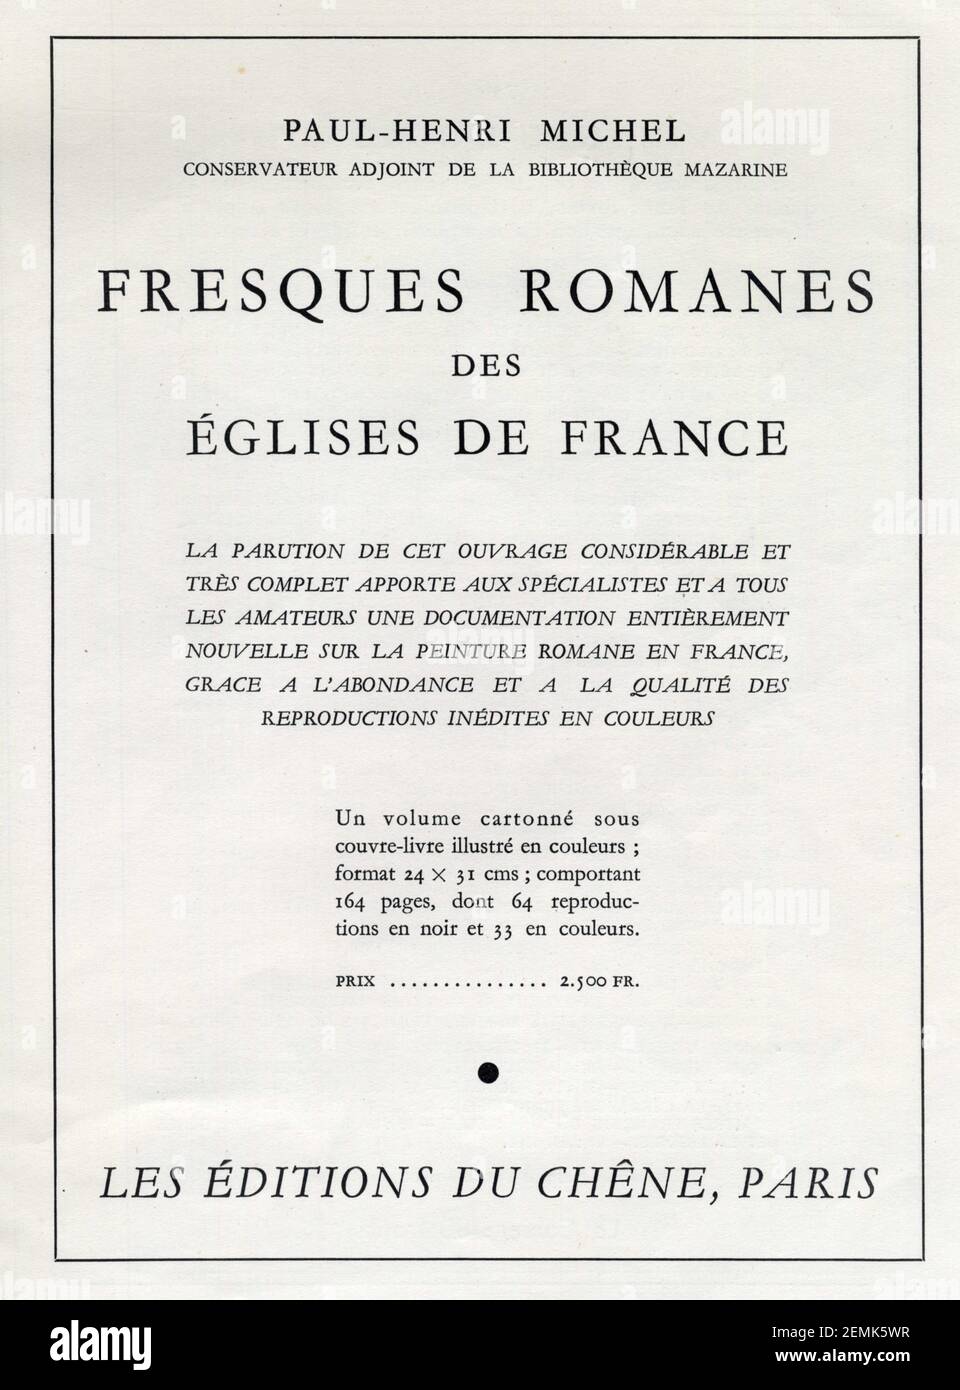 Publicité ancienne. Fresques romanes des églises de France, Paul-Henri Michel. 1950 Stock Photo